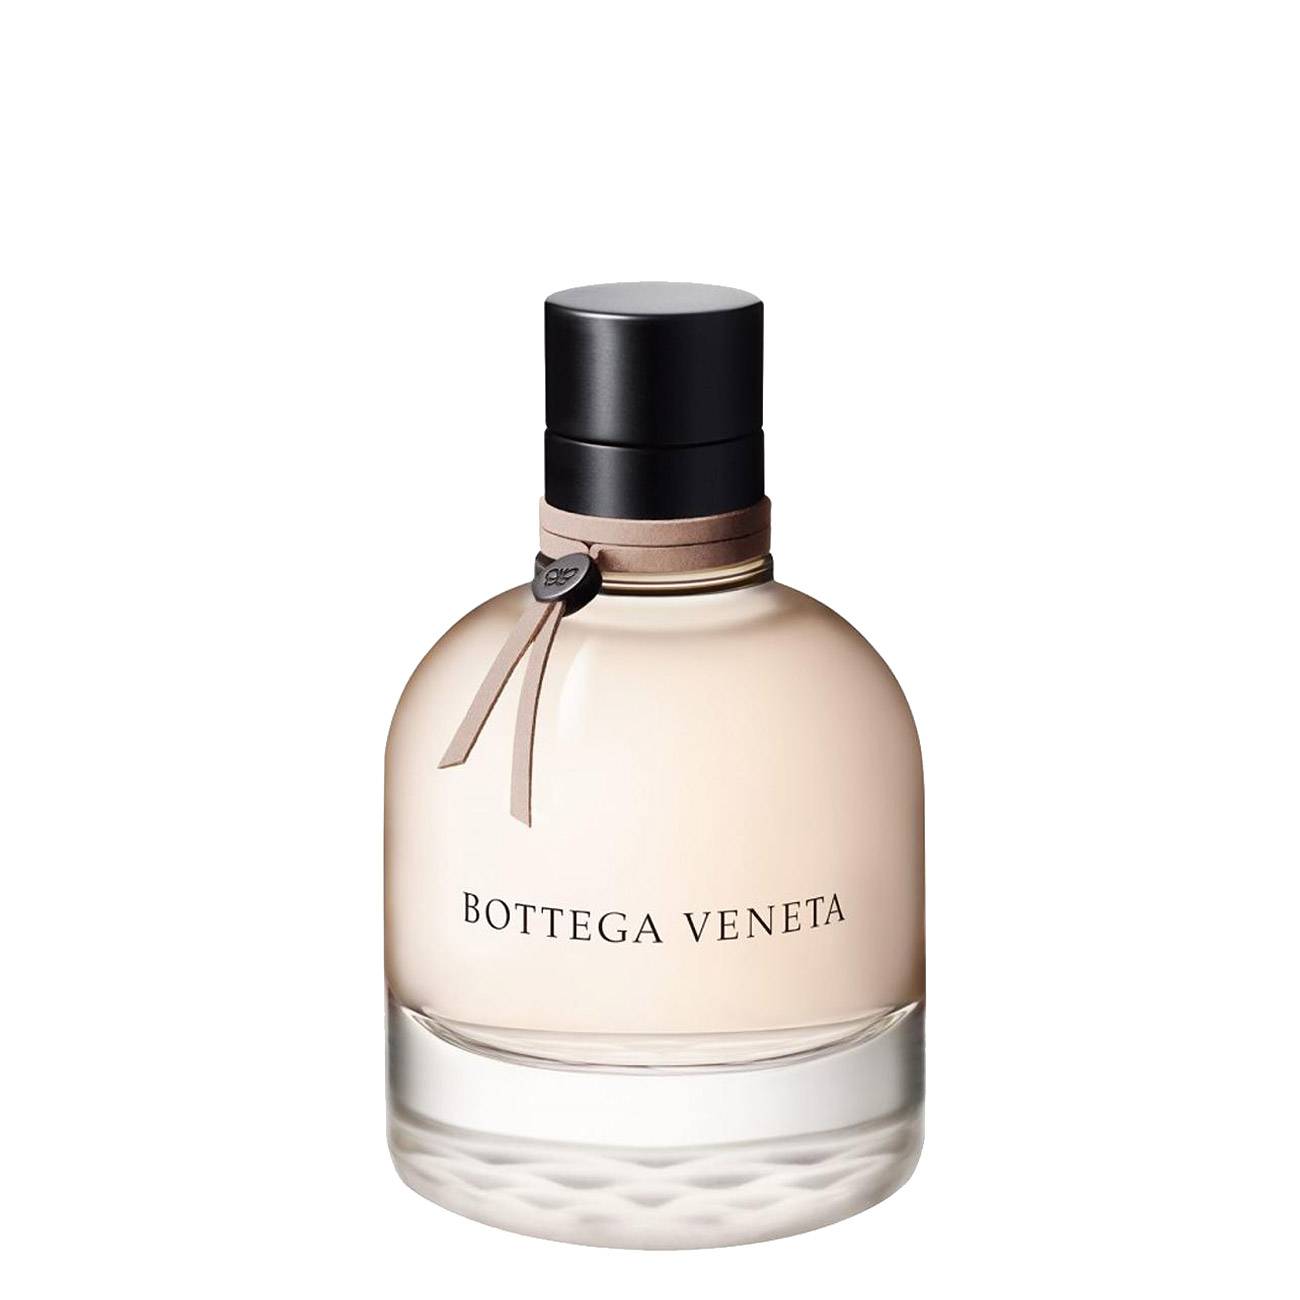 Apa de Parfum Bottega Veneta BOTTEGA VENETA 75ml cu comanda online